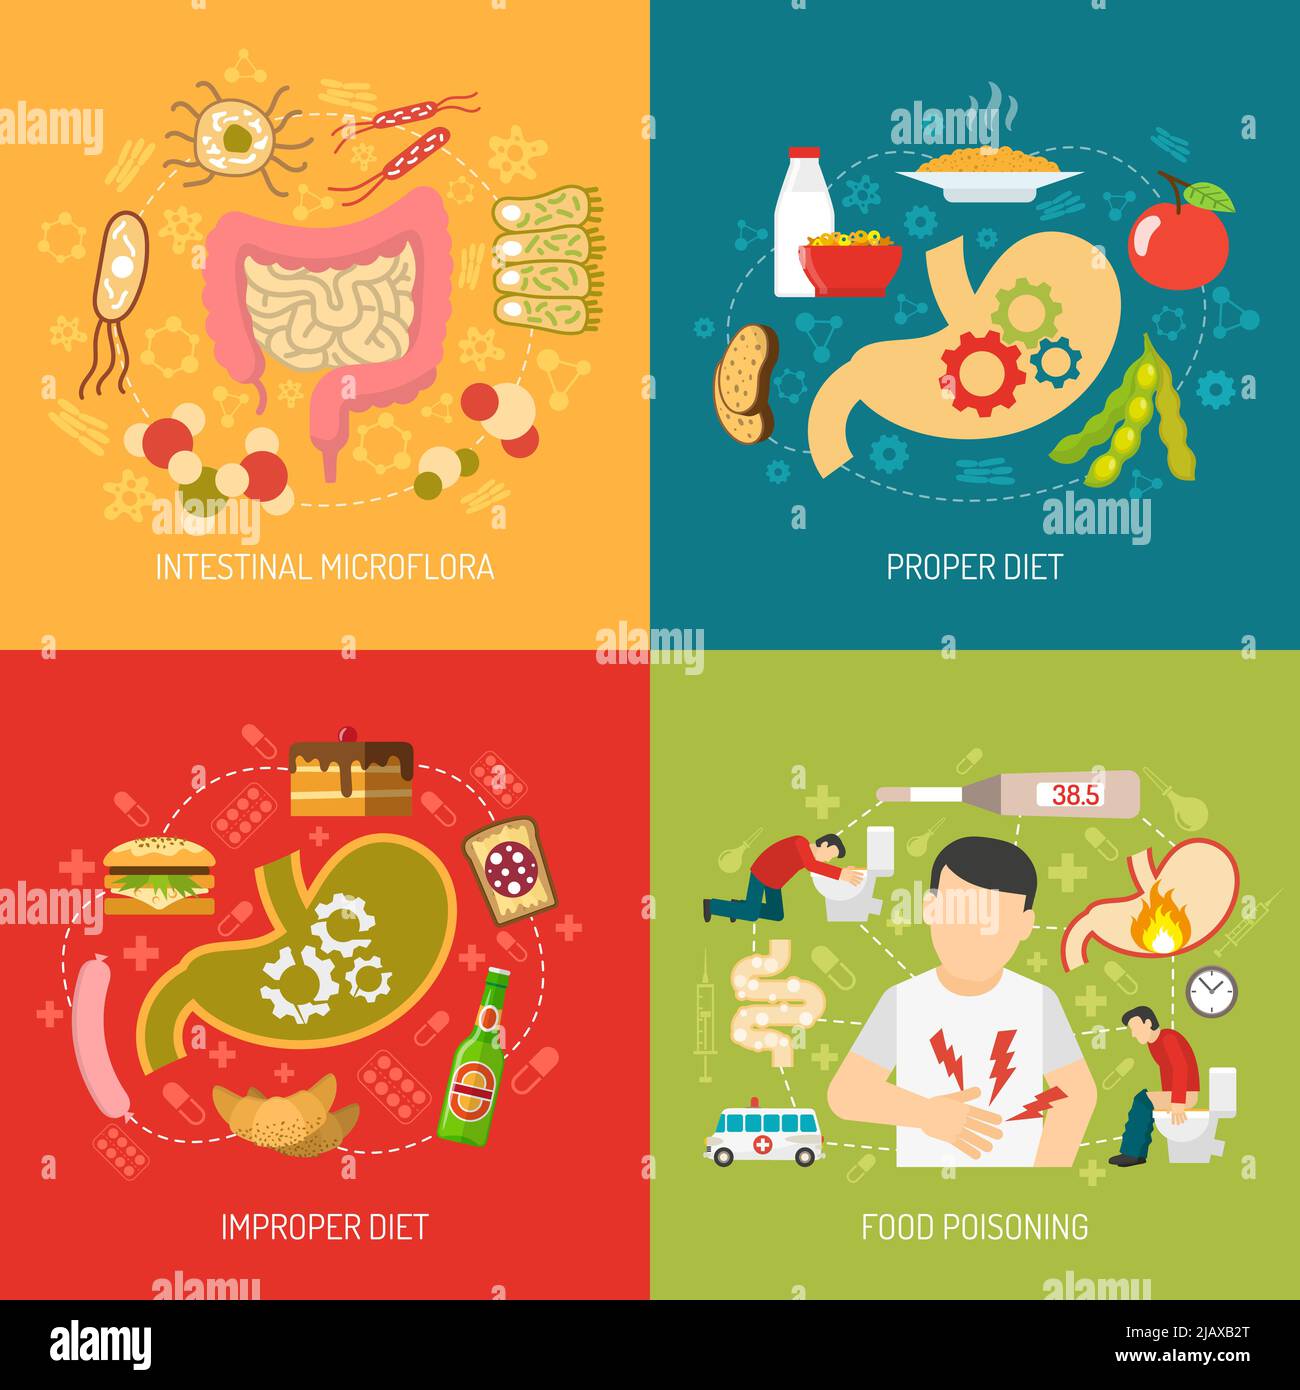 Icone del concetto di digestione impostate con la microflora intestinale e i simboli della dieta corretta illustrazione vettoriale isolata piatta Illustrazione Vettoriale